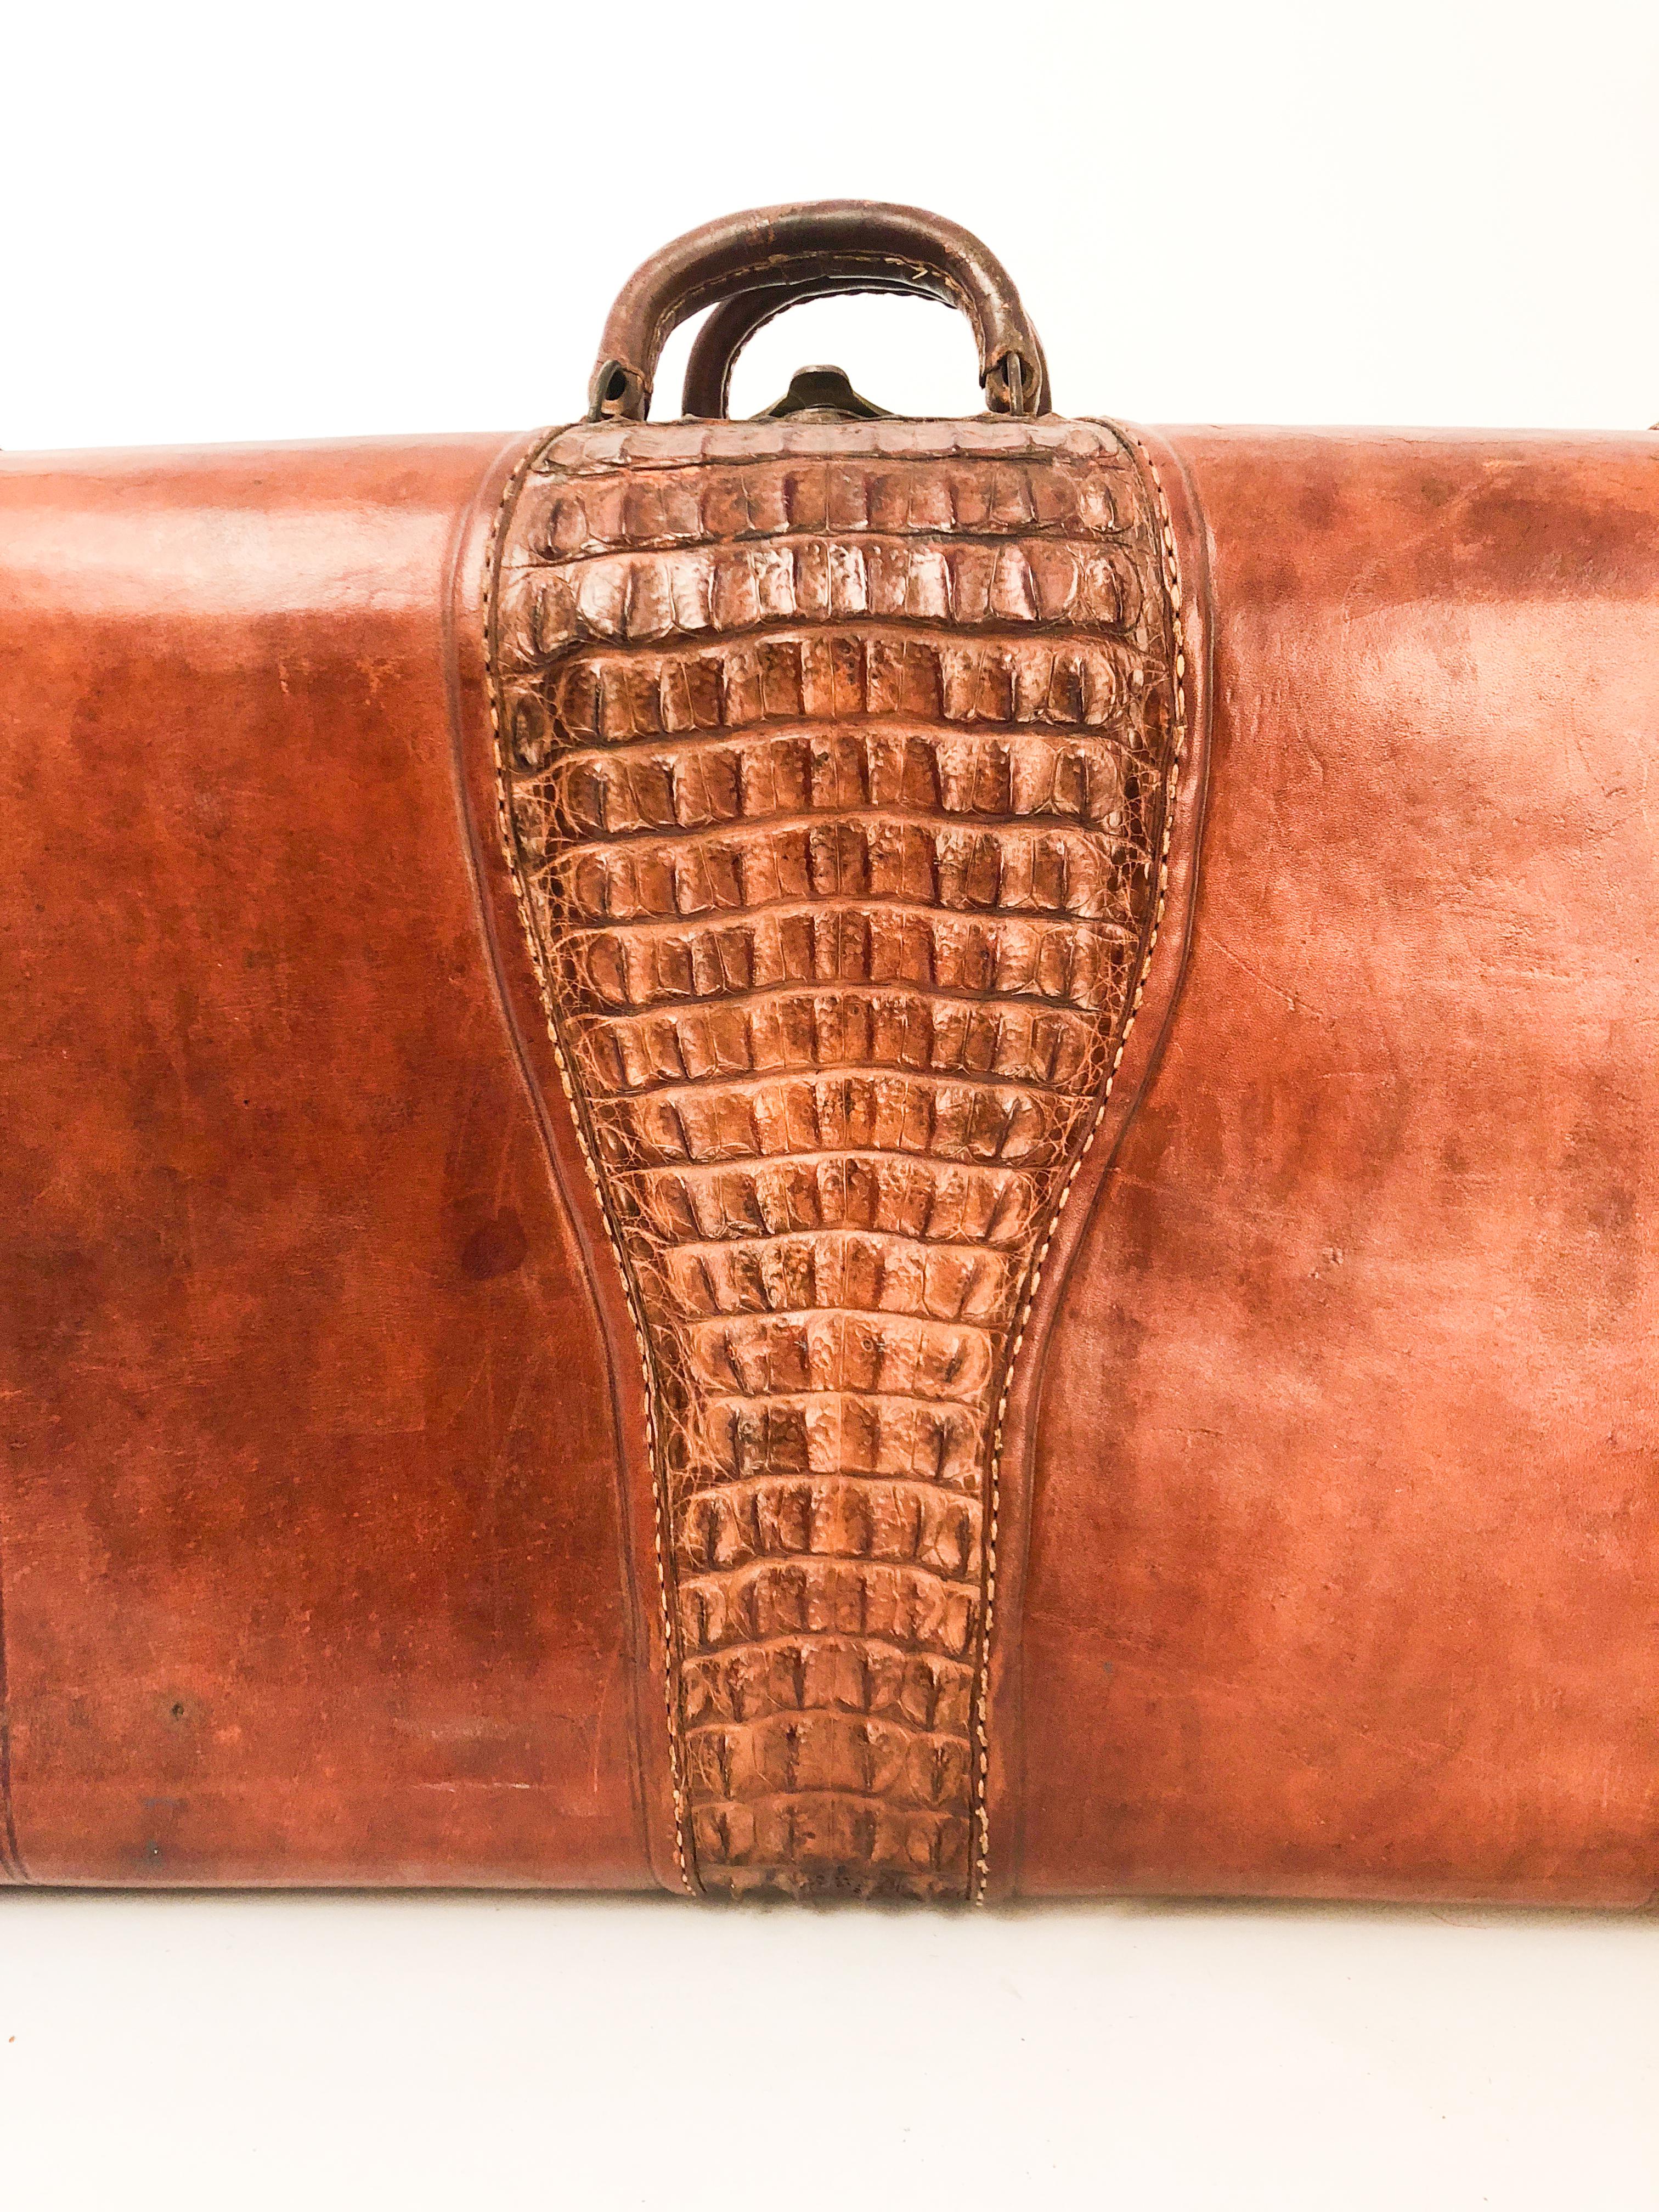 Valise en cuir fabriquée sur mesure avec un panneau central en caïman appliqué. Doublure en toile avec compartiment central. 